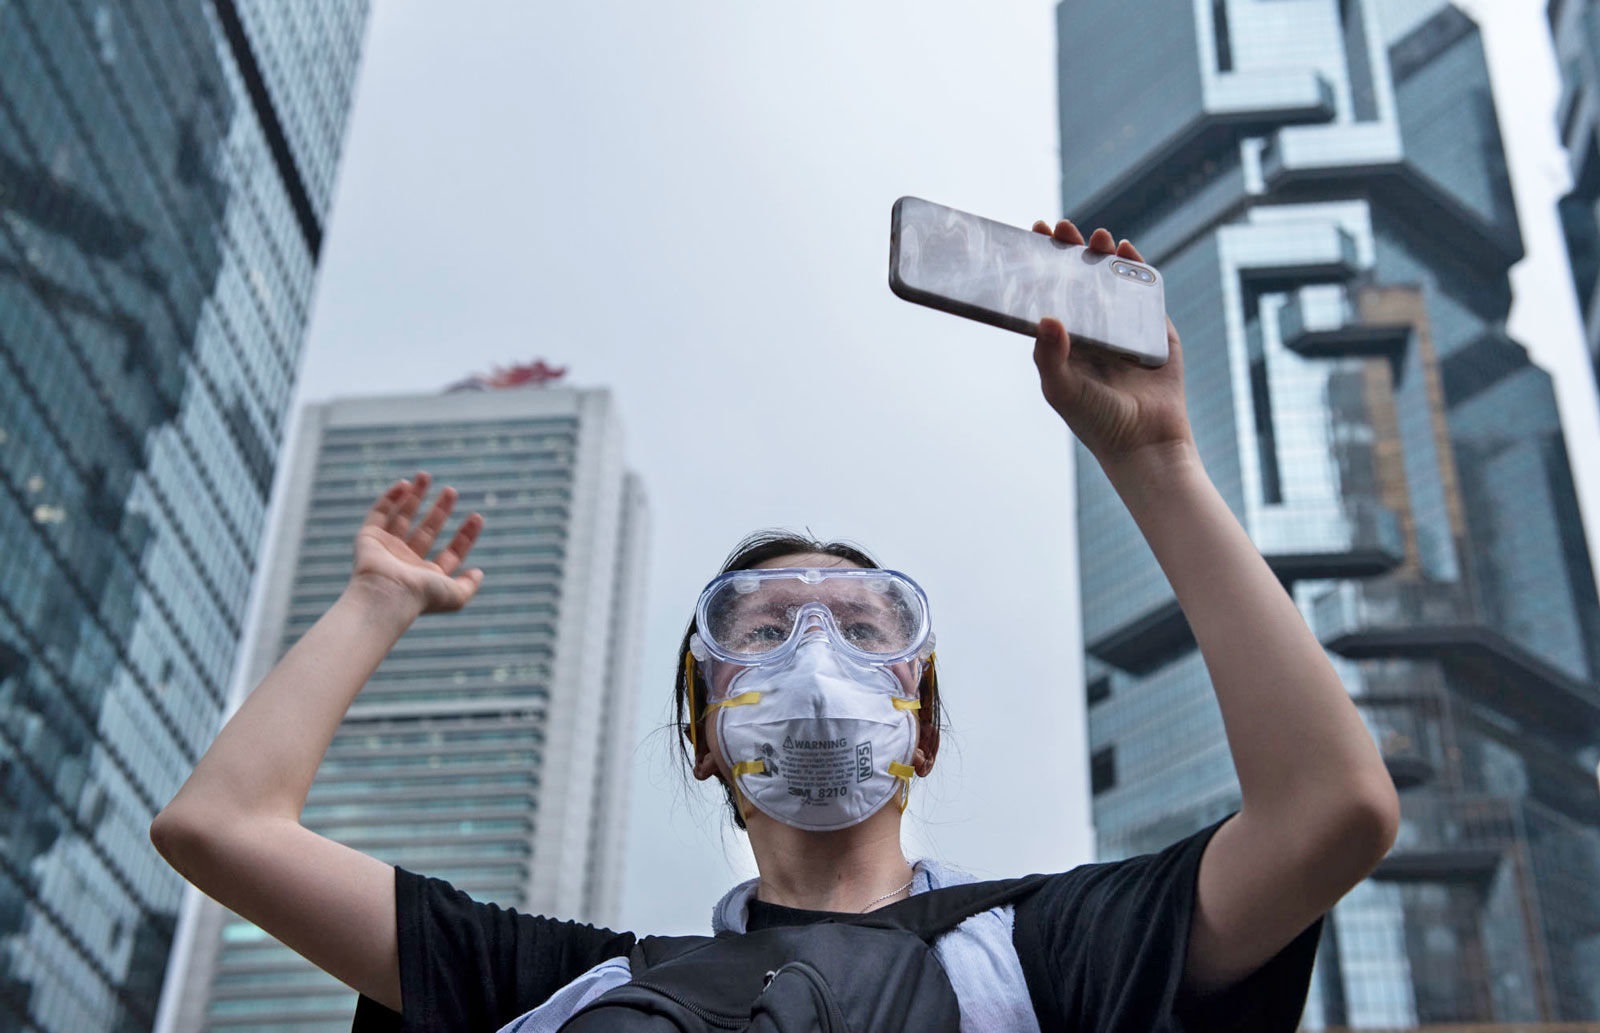 هدیە تلگرام بە معترضین هنگ کنگ، فرصت مناسبی برای مردم ایران